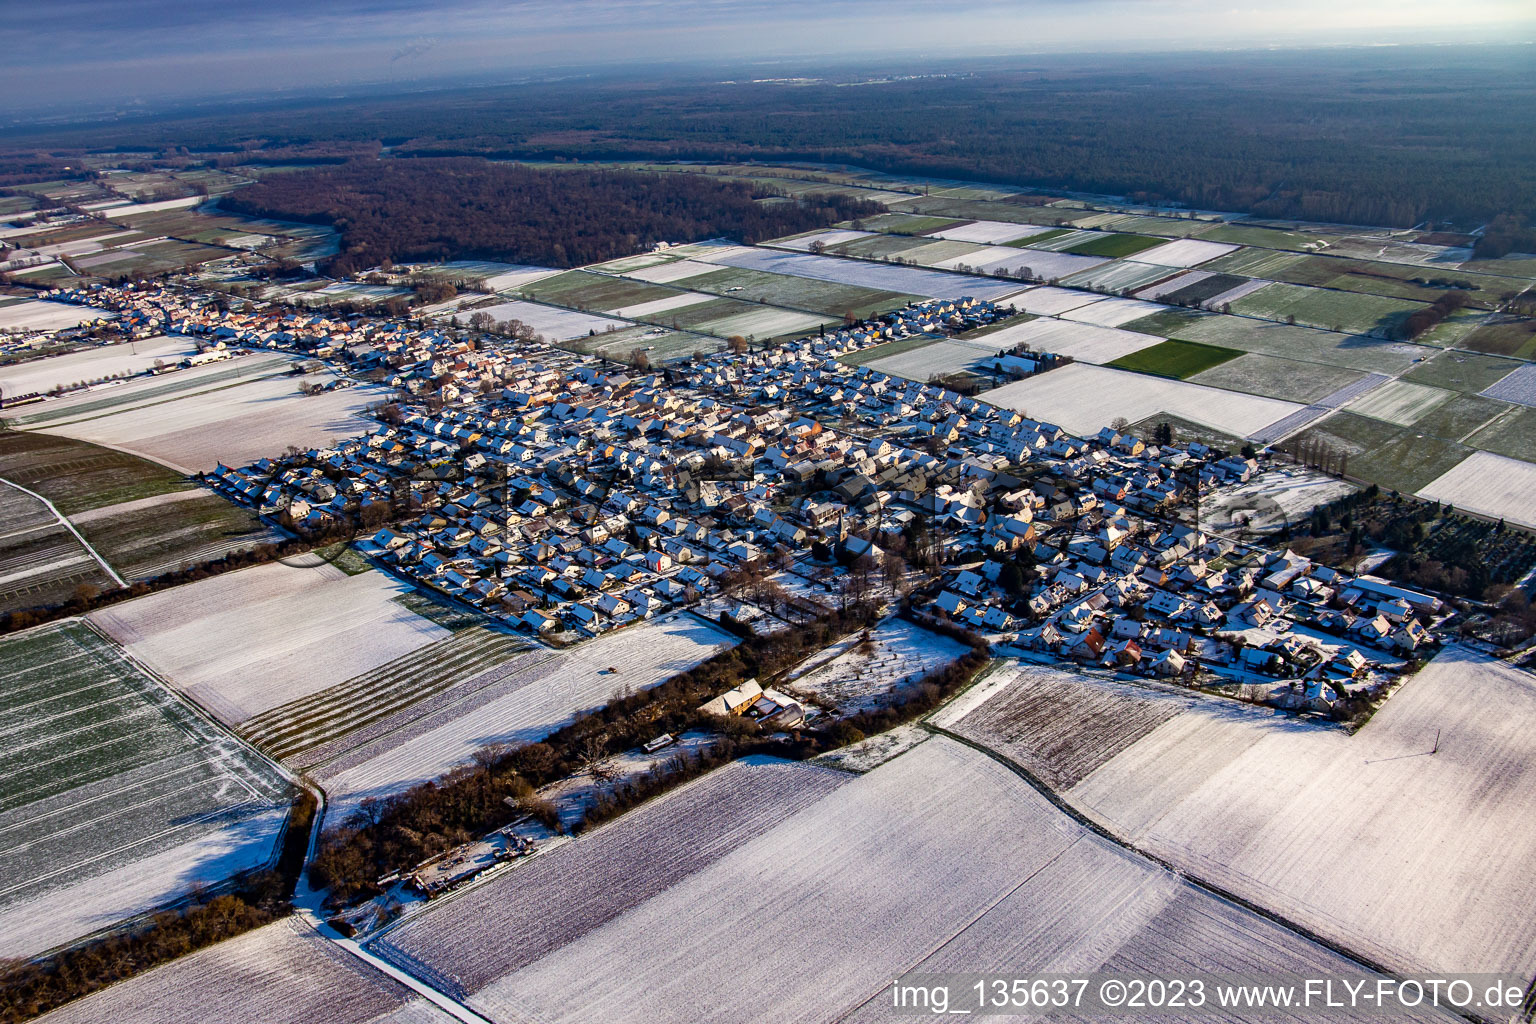 Vue aérienne de En hiver quand il y a de la neige à Freckenfeld dans le département Rhénanie-Palatinat, Allemagne